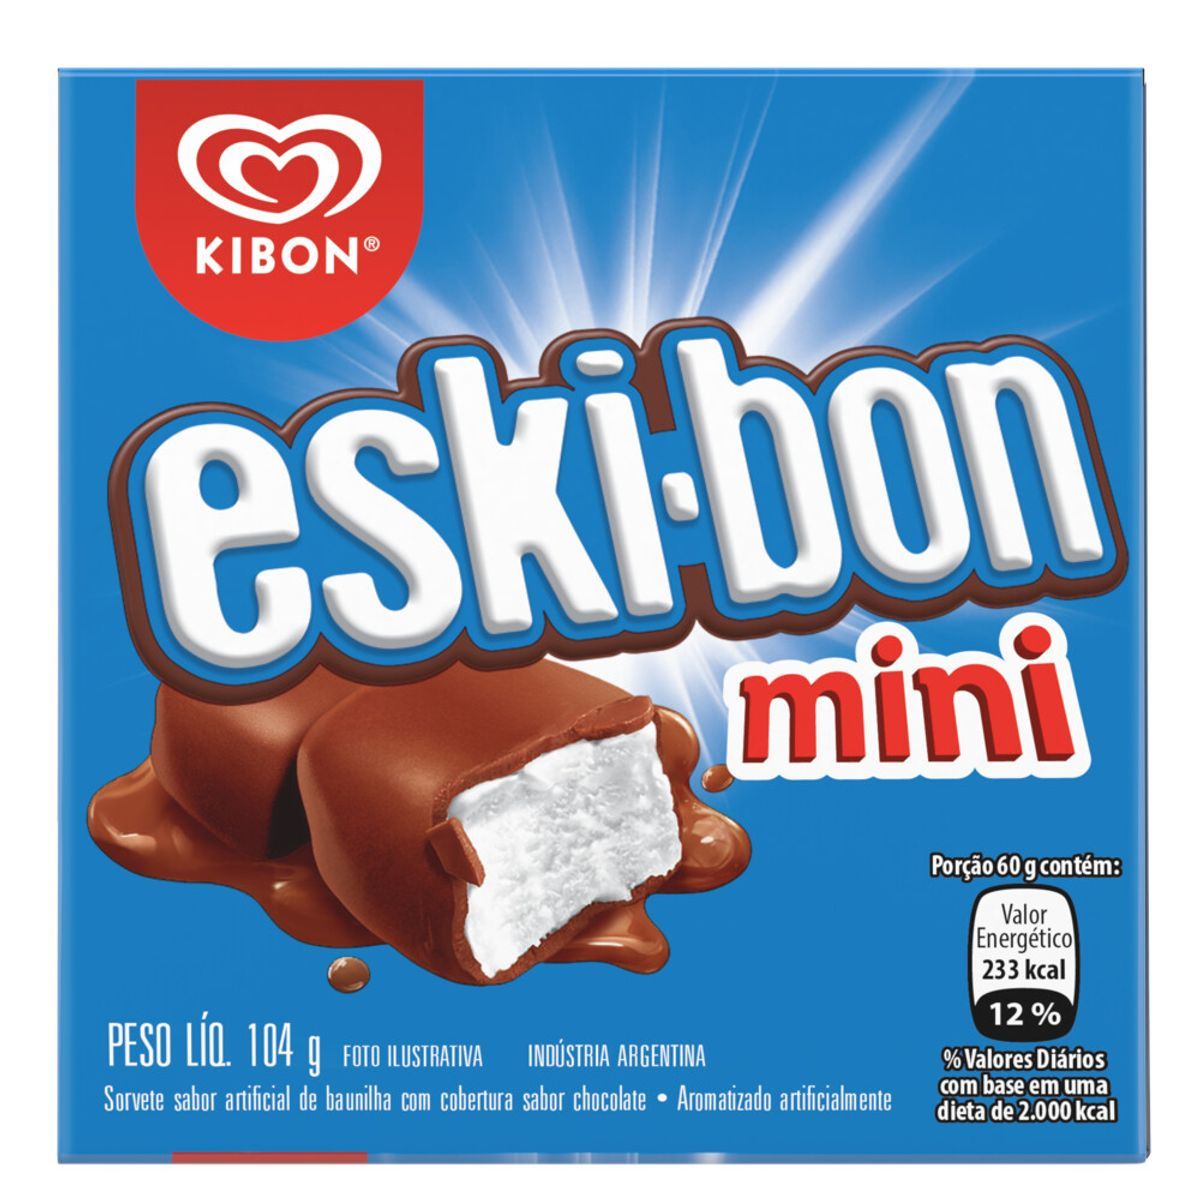 Sorvete Kibon Eski-bon Mini Caixa 92g